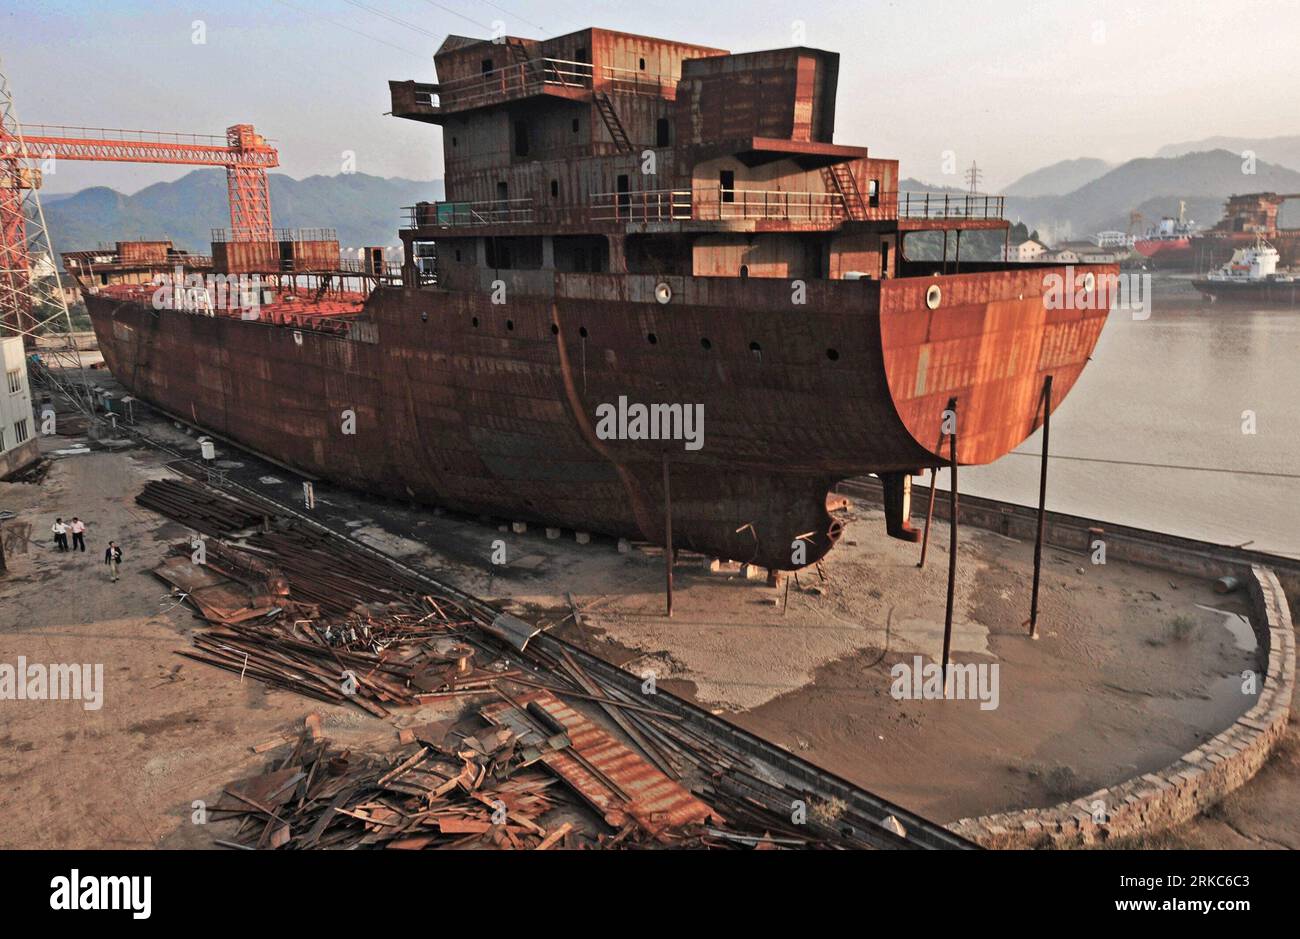 Bildnummer : 54678842 Datum : 17.10.2010 Copyright : imago/Xinhua (101126) -- TAIZHOU, 26 novembre 2010 (Xinhua) -- un navire inachevé est vu dans un chantier naval privé dans la ville de Taizhou, province de Zhejiang dans l'est de la Chine, le 17 octobre 2009. En plus de 40 ans, l'océan vaste et profond a donné à Li Changxian tout sauf les soucis. Mais depuis le début de la crise financière mondiale il y a deux ans, le milliardaire de 44 ans est tombé dans le blues. Debout dans le chantier naval autrefois animé de Hongda qu'il dirigeait à Taizhou, Li Changxian posa sa main sur la coque rouillée d'un navire inachevé et se demanda si c'était le cas Banque D'Images